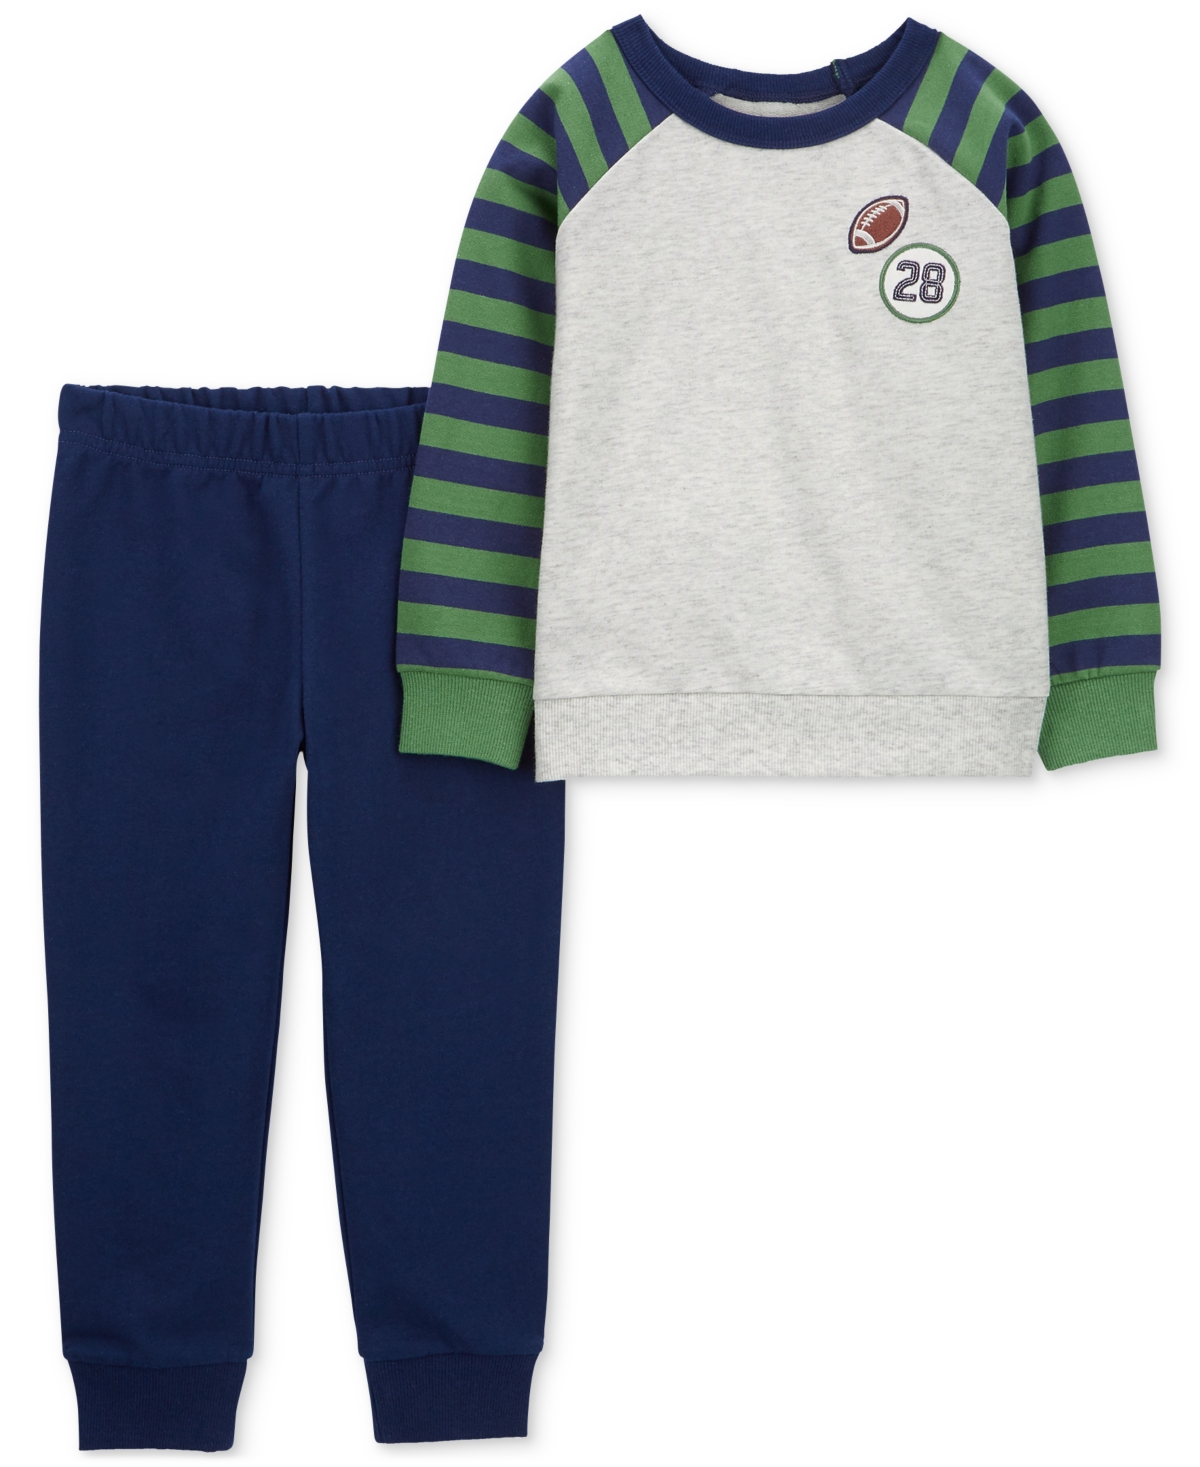 Carter's Babies' Toddler Boys Football Raglan T-shirt And Pants, 2 Piece Set In Multi